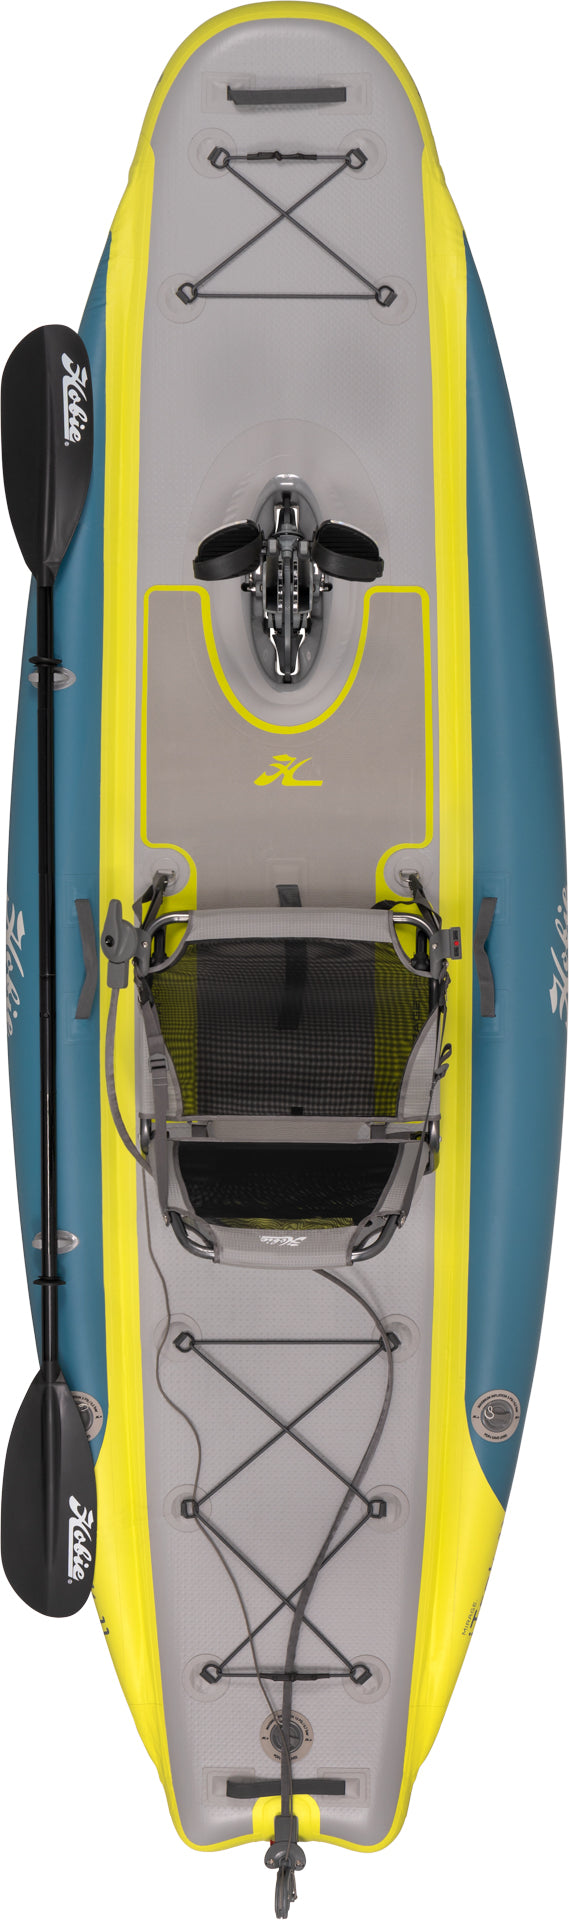 Hobie Mirage ITREK Fiesta. Kayak hinchable a pedales.